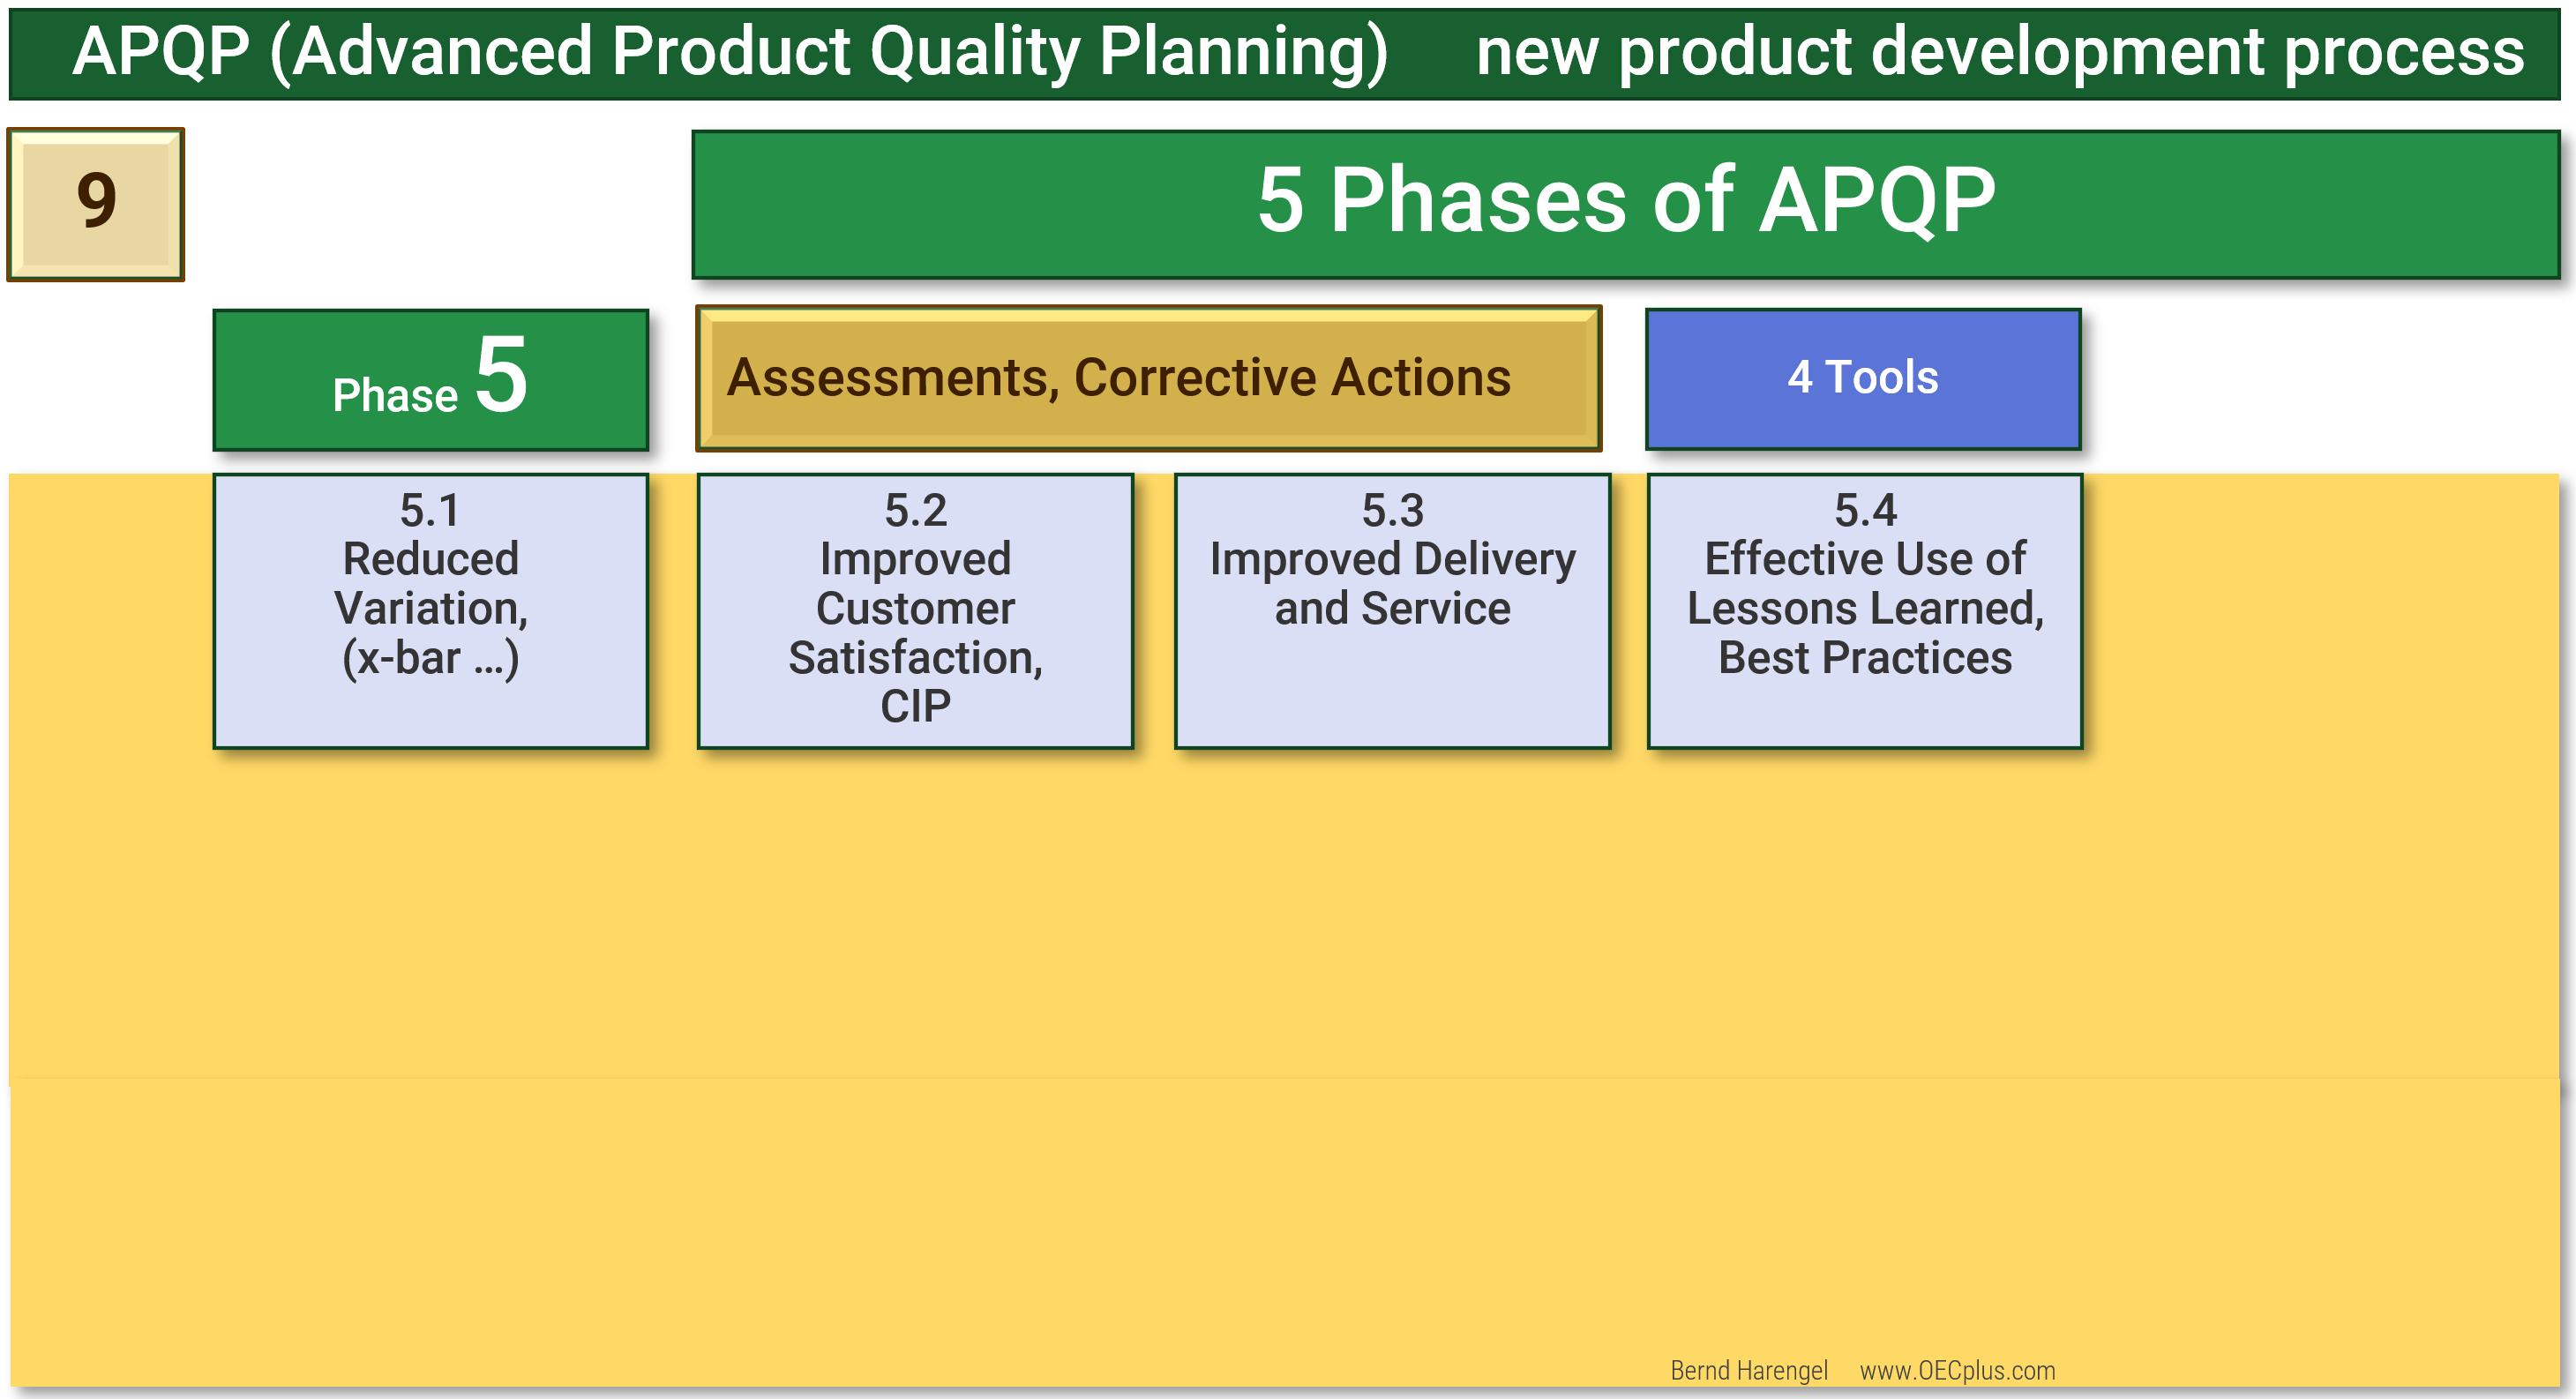 Das Bild zeigt eine grafische Darstellung der fünften Phase des APQP-Prozesses, die als Rückmeldung, Beurteilung und Korrekturmaßnahmen bezeichnet wird.